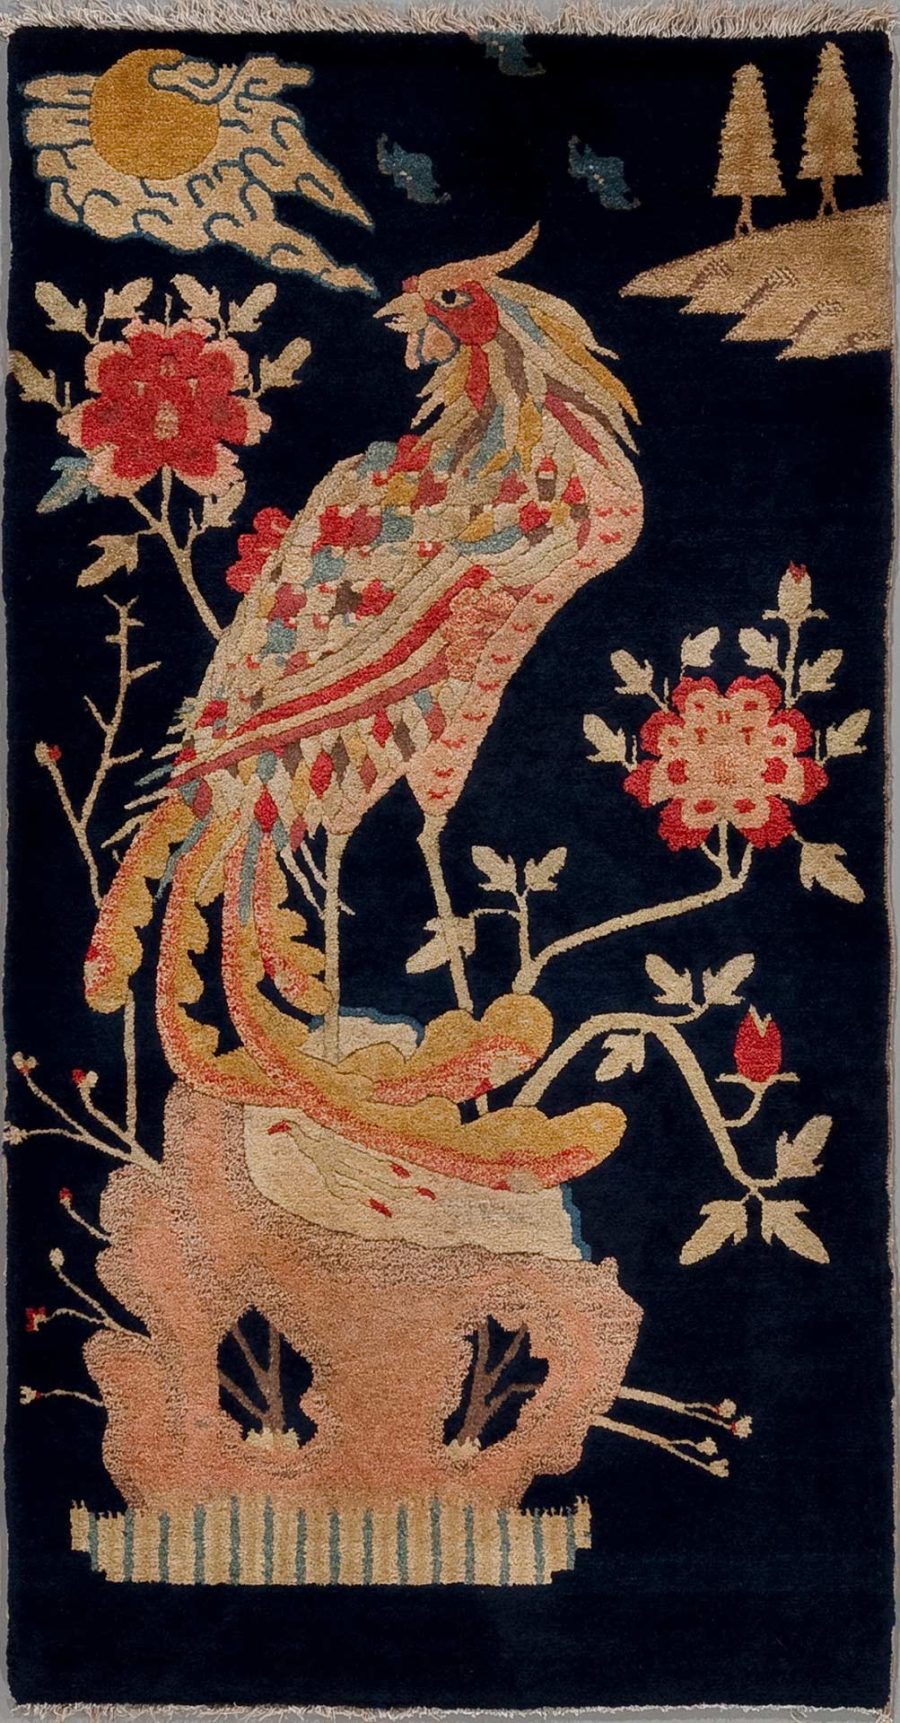 Alt-Text: Antiker Wandteppich mit der Darstellung eines farbenprächtigen Pfauens auf einem Blumentopf, umgeben von blühenden Pflanzen und Blumen gegen einen nachtblauen Himmel, mit einer stilisierten Sonne und Wolken im Hintergrund.